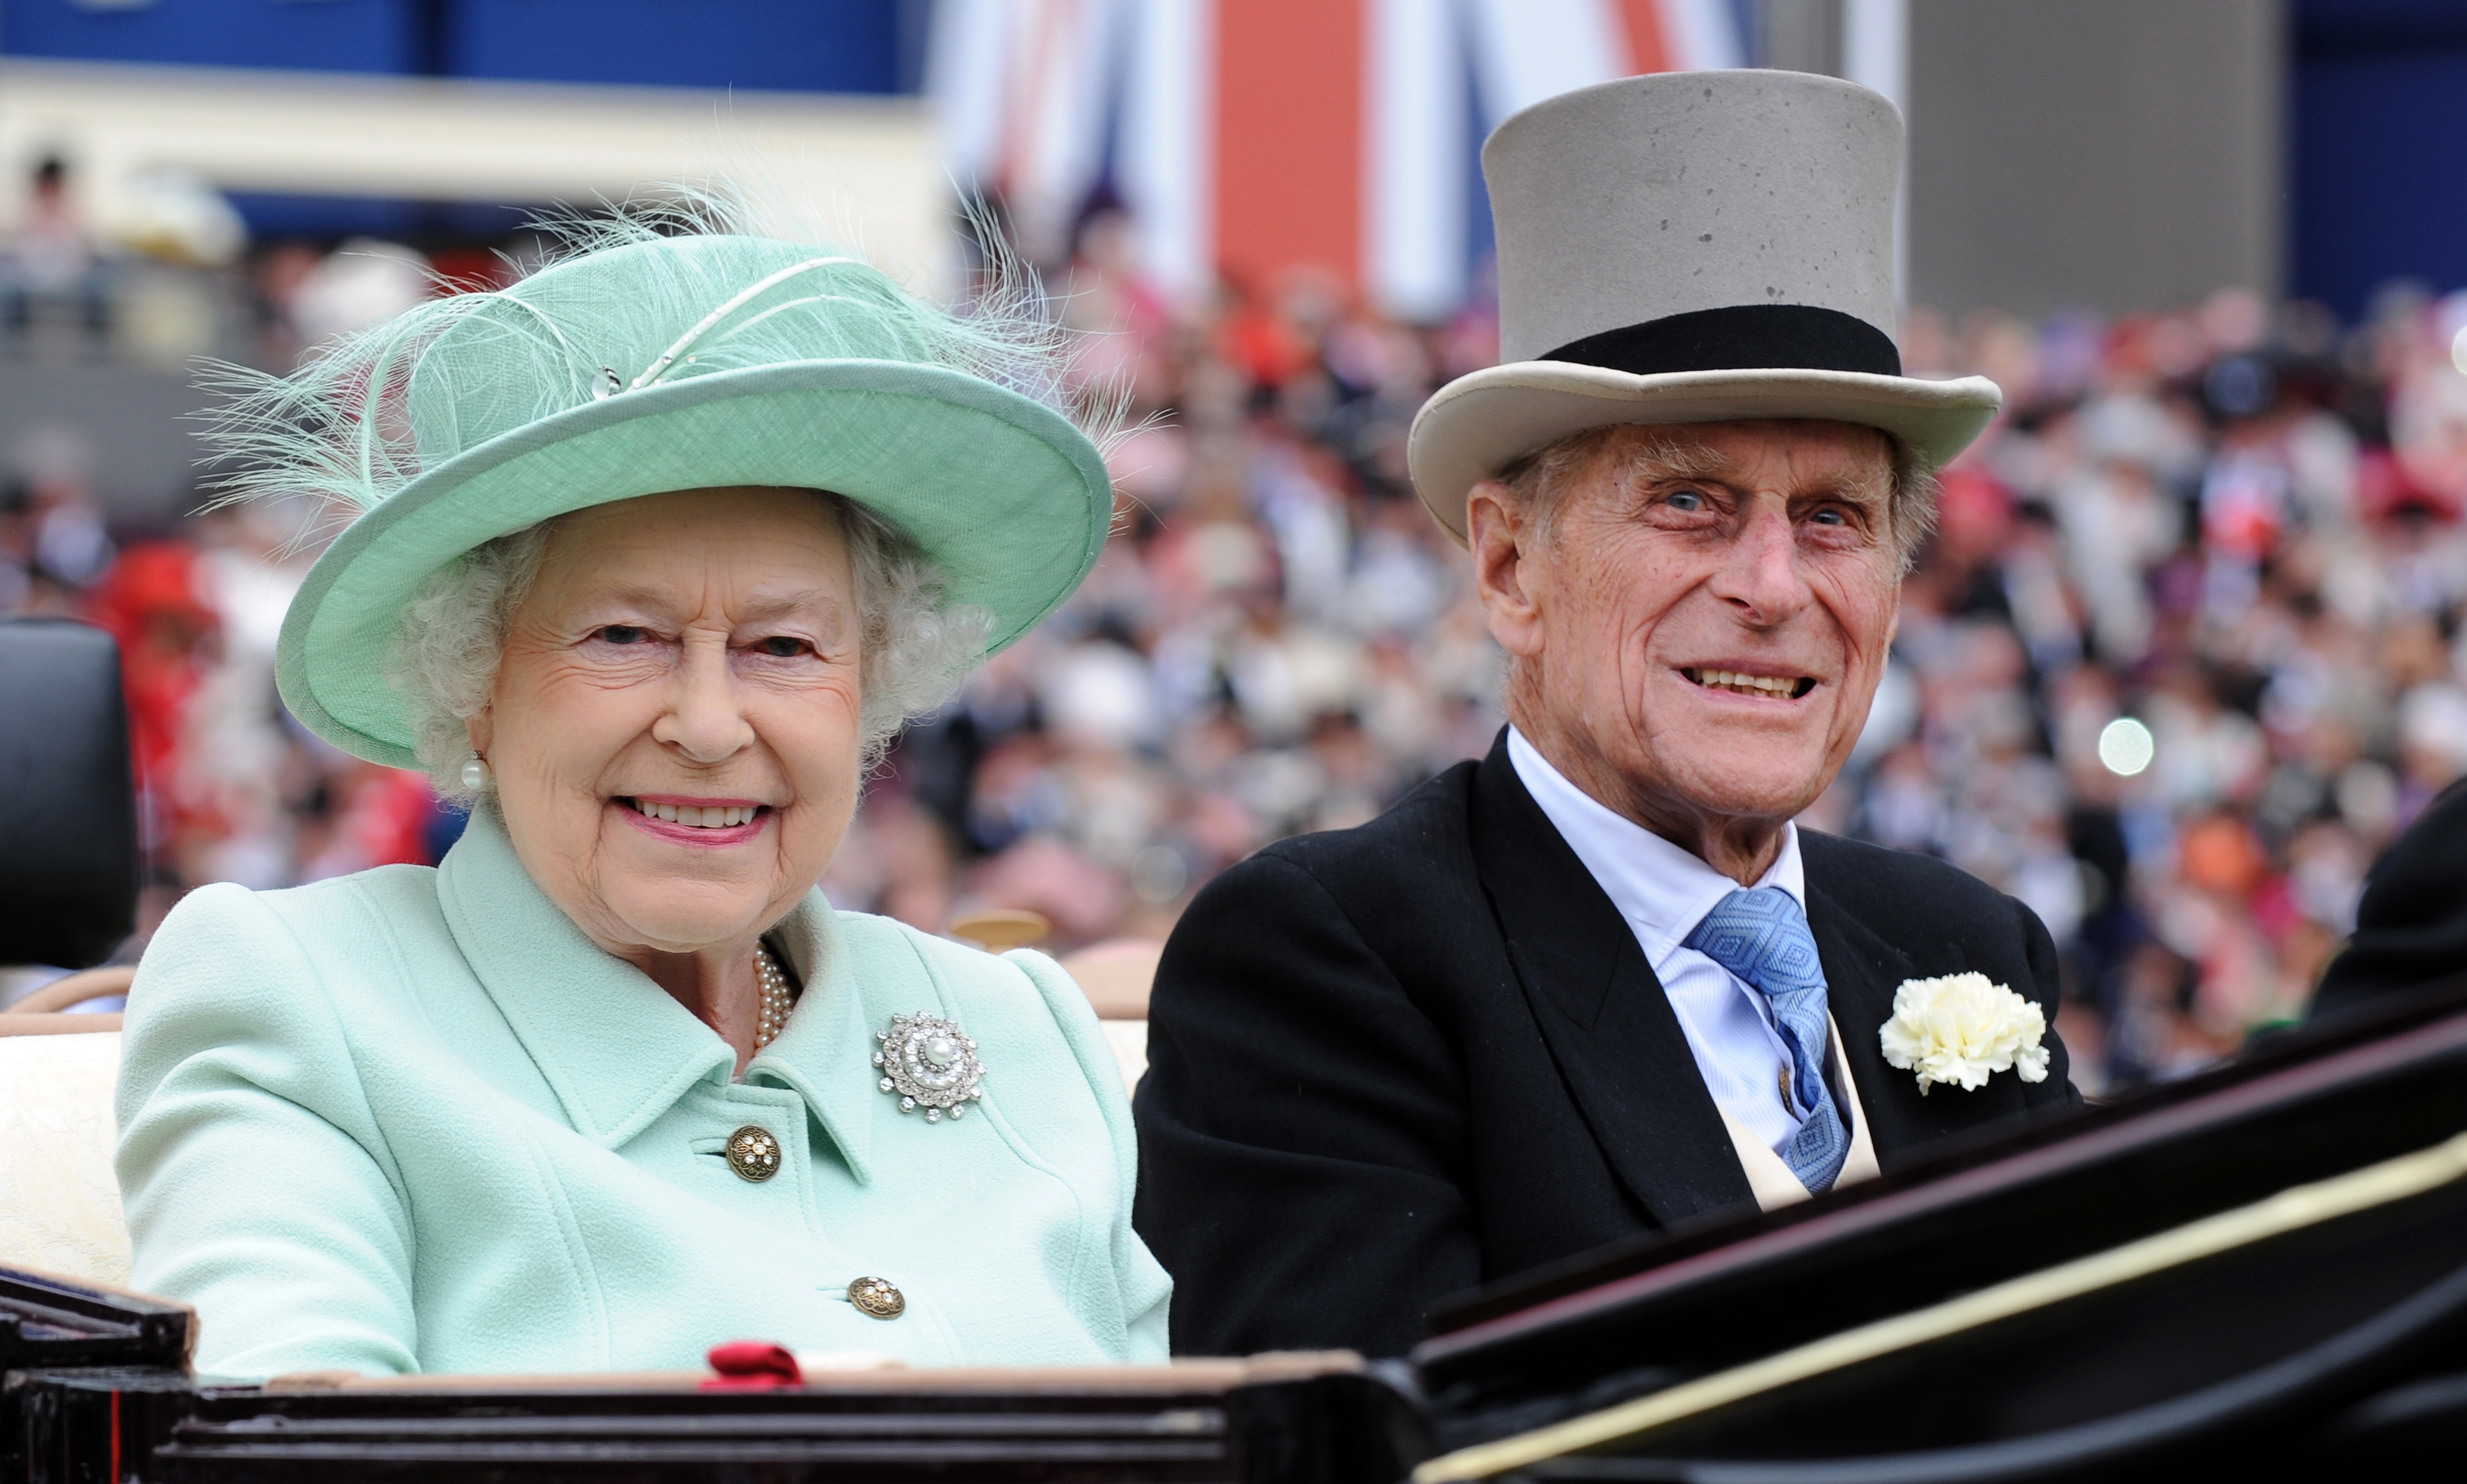 Imagen de archivo, tomada en junio de 2012, de la reina Isabel II y su marido, el príncipe Felipe, en las carreras de Ascot (EFE/EPA/ANDY RAIN)
